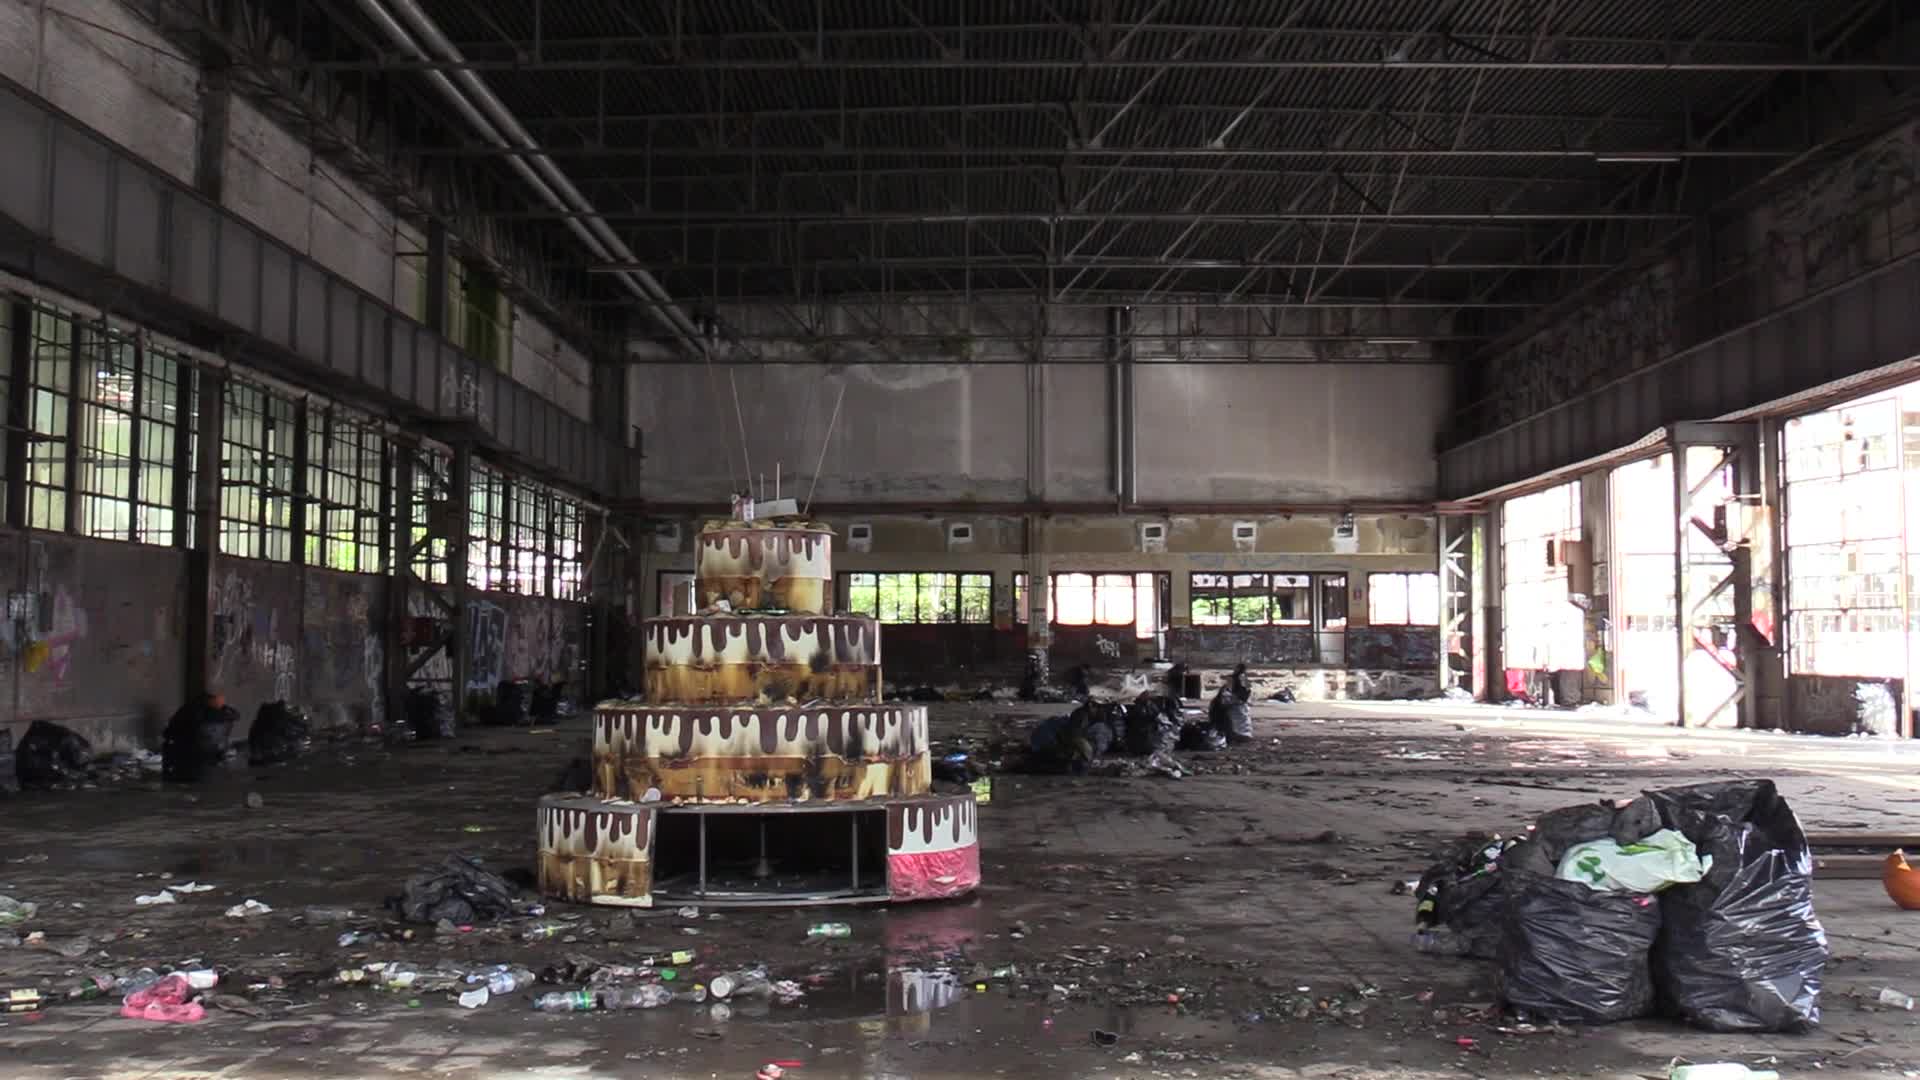 Rave Torino, nella fabbrica abbandonata teatro del party abusivo